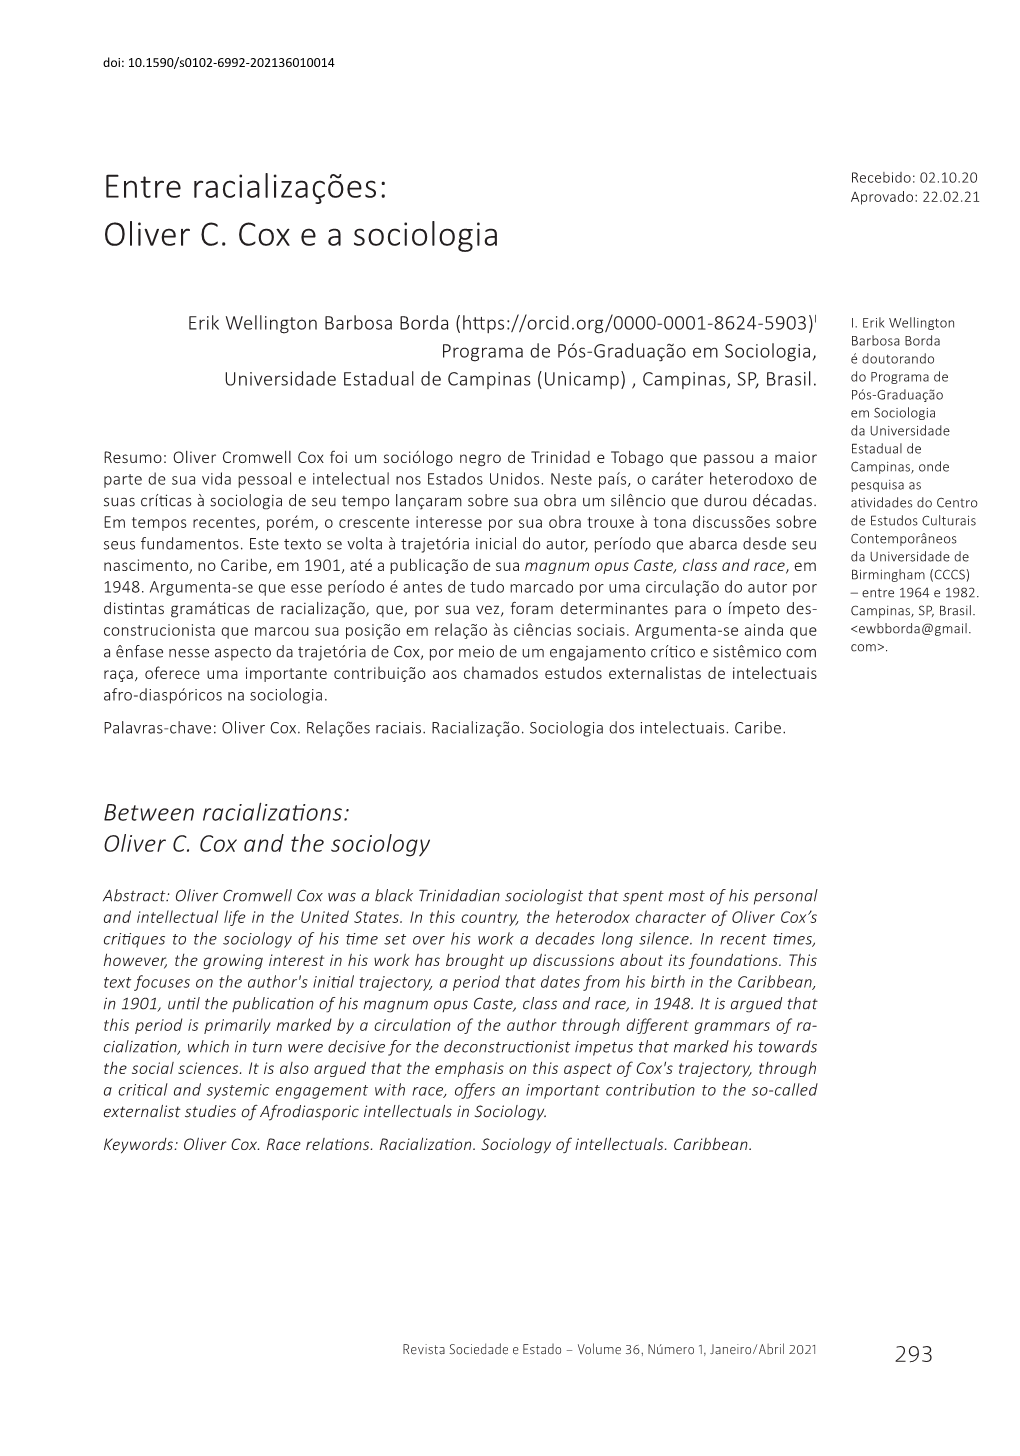 Entre Racializações: Oliver C. Cox E a Sociologia